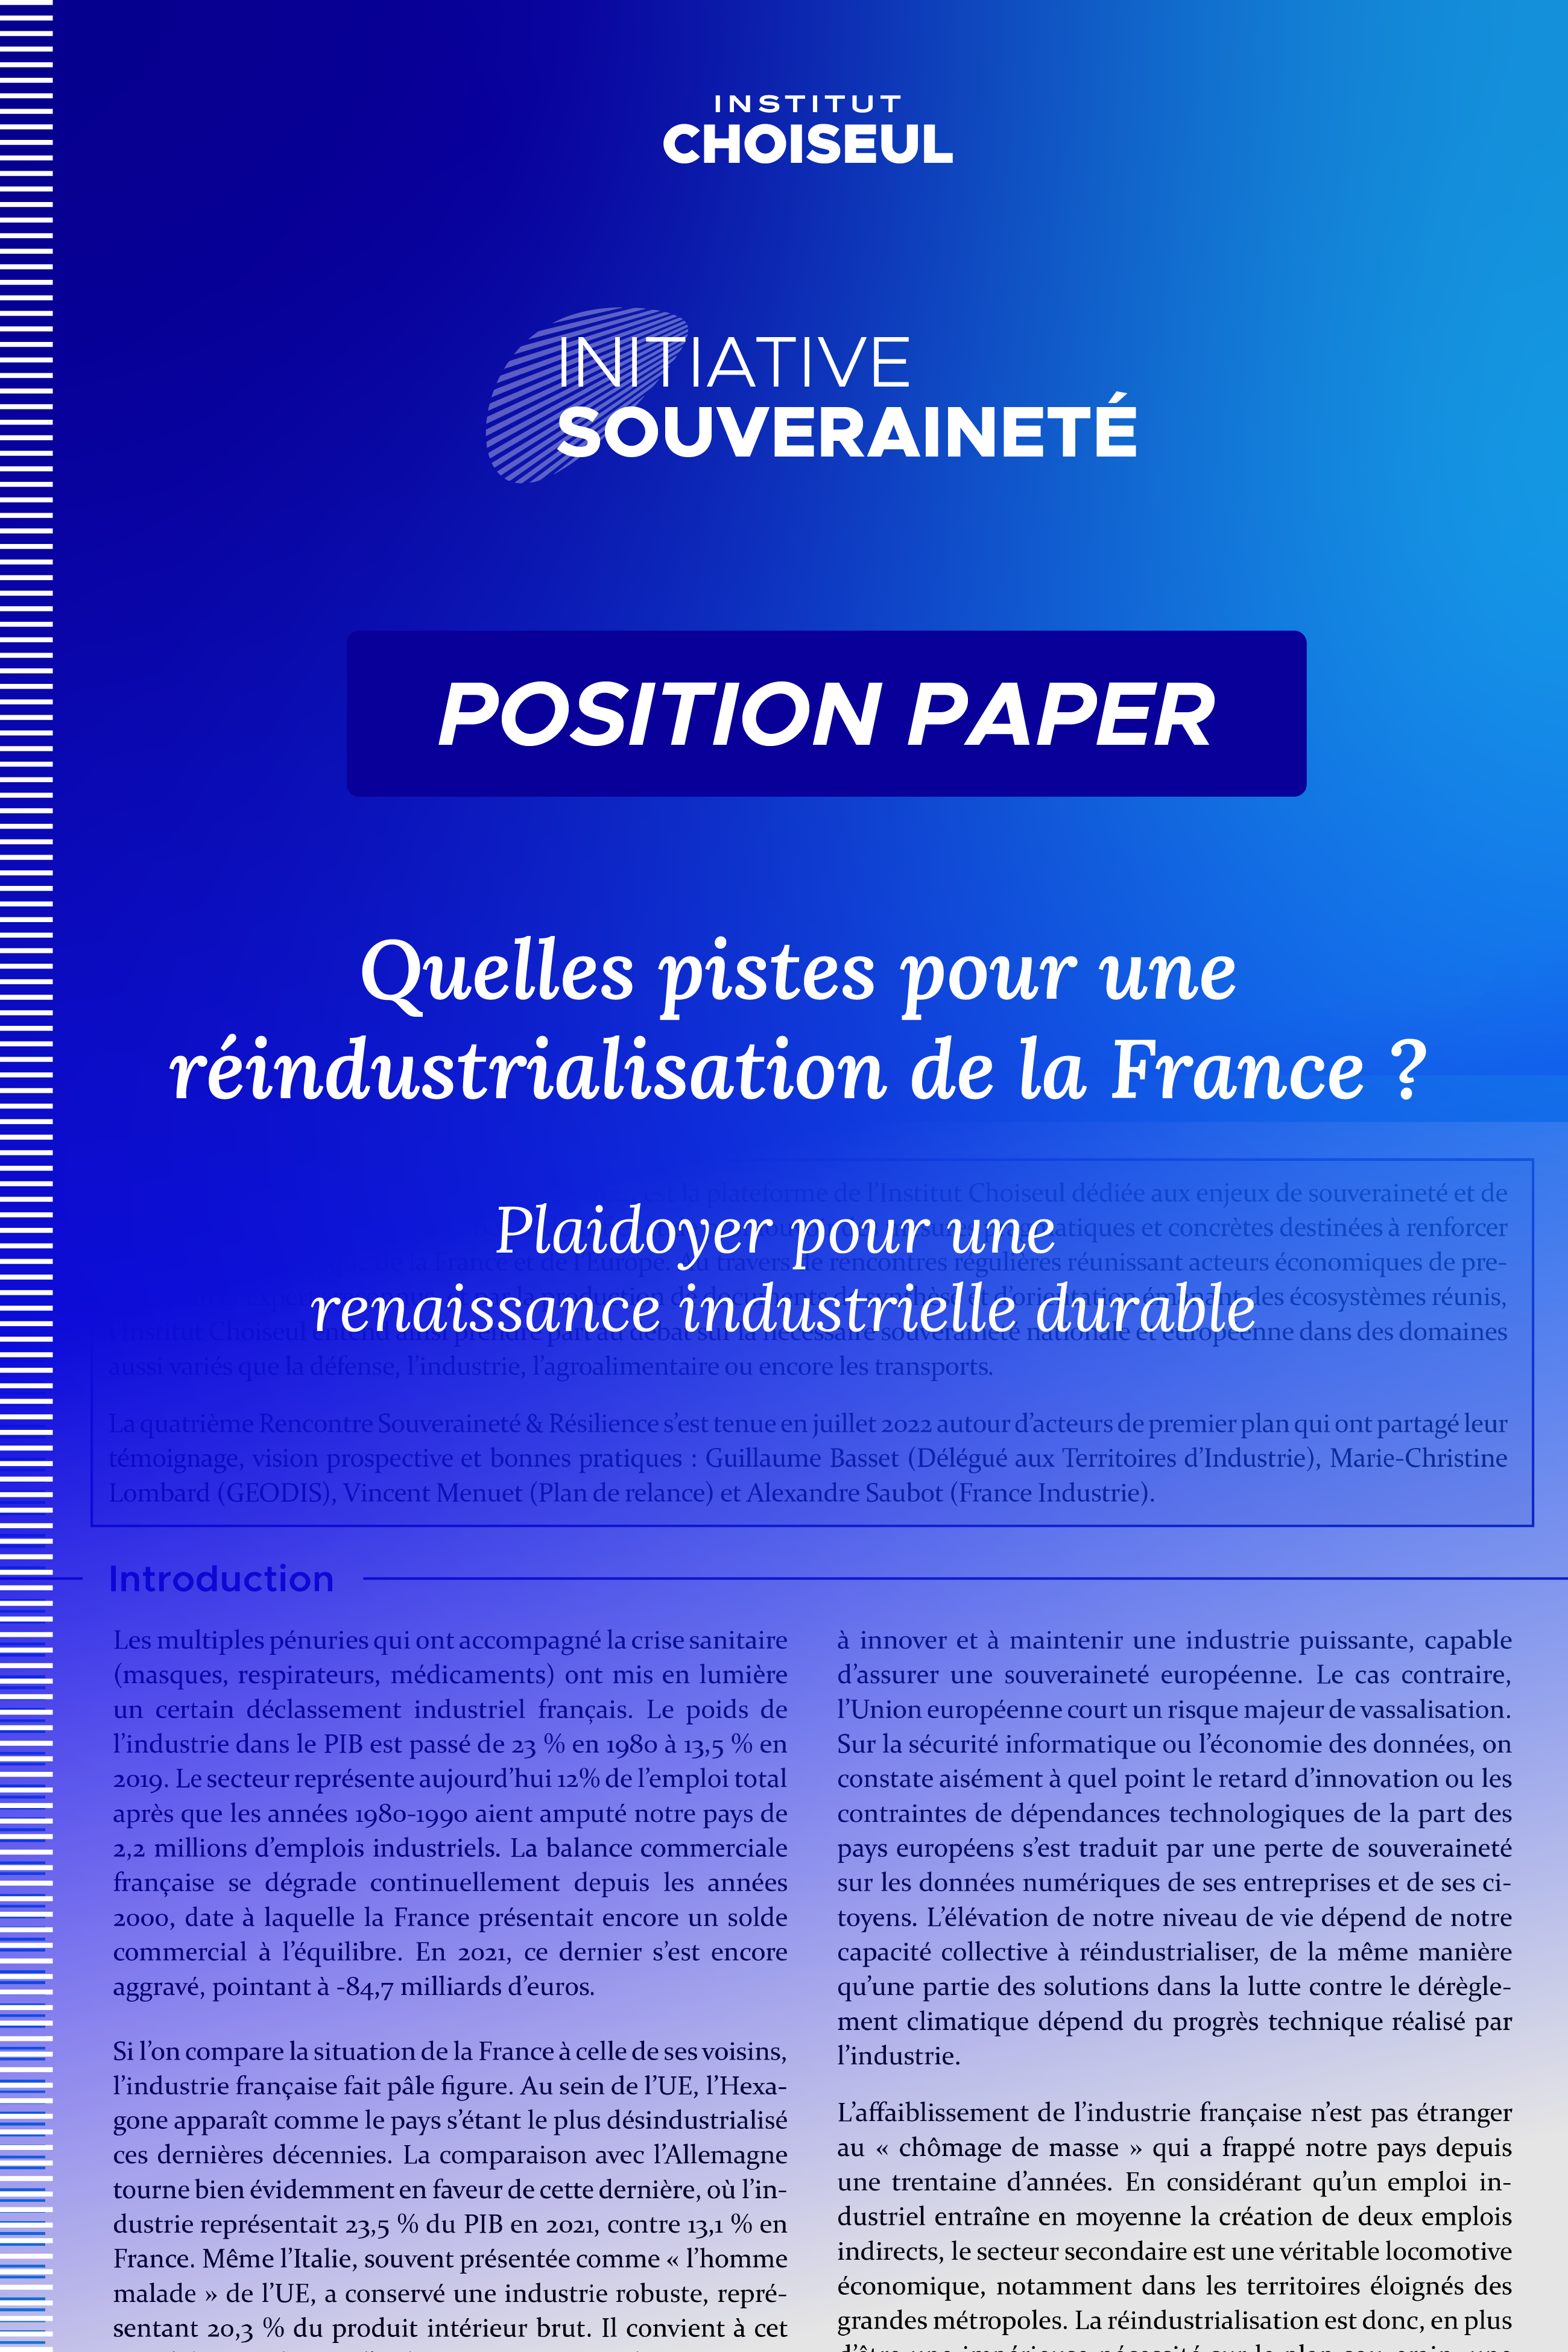 Quelles pistes pour une réindustrialisation de la France ?